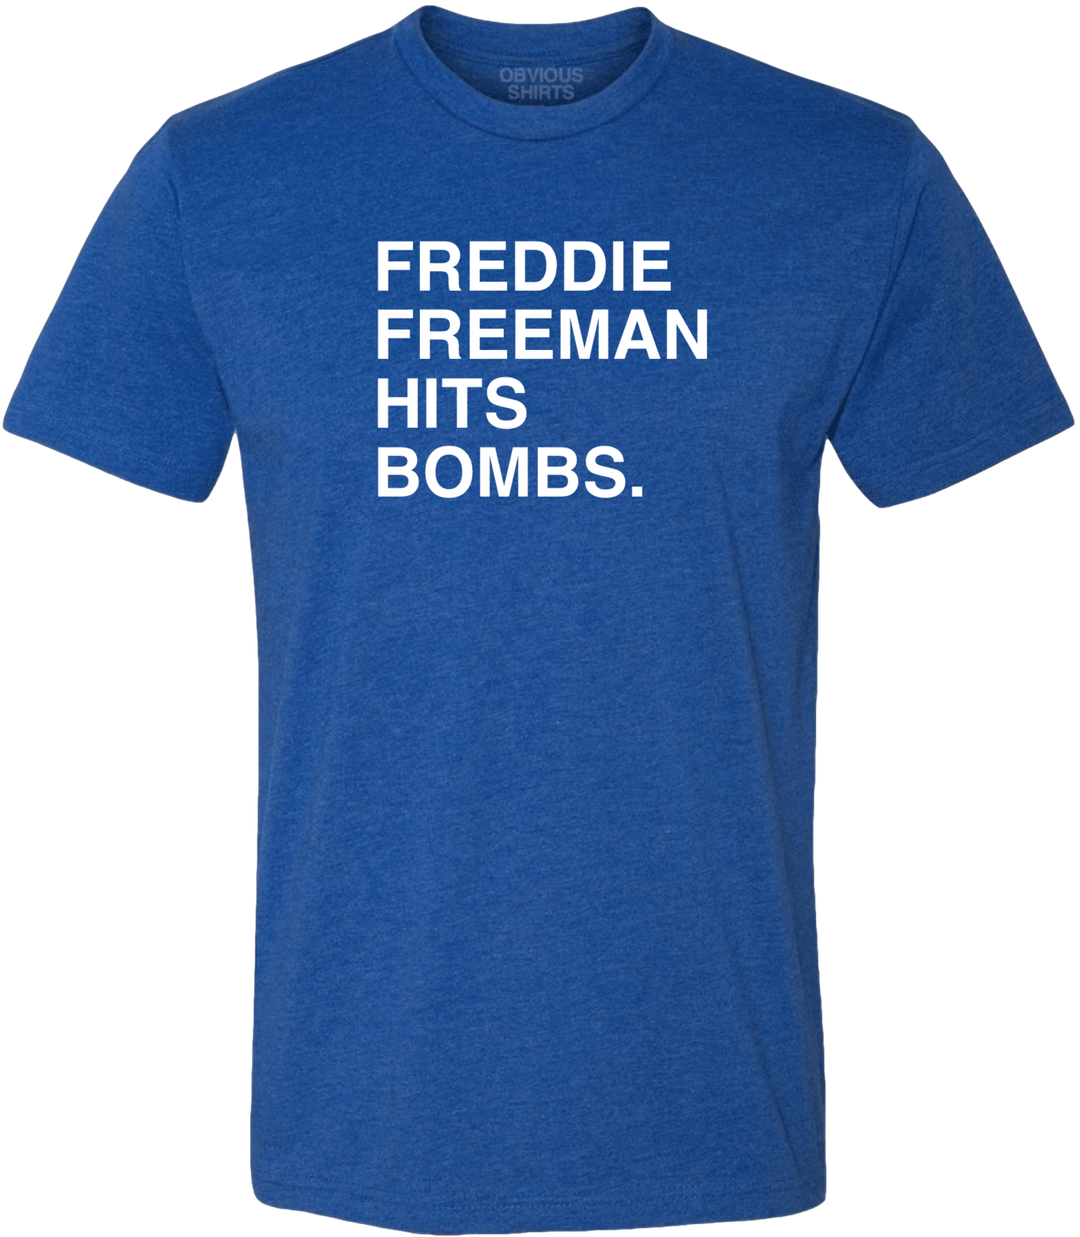 FREDDIE FREEMAN HITS BOMBS.